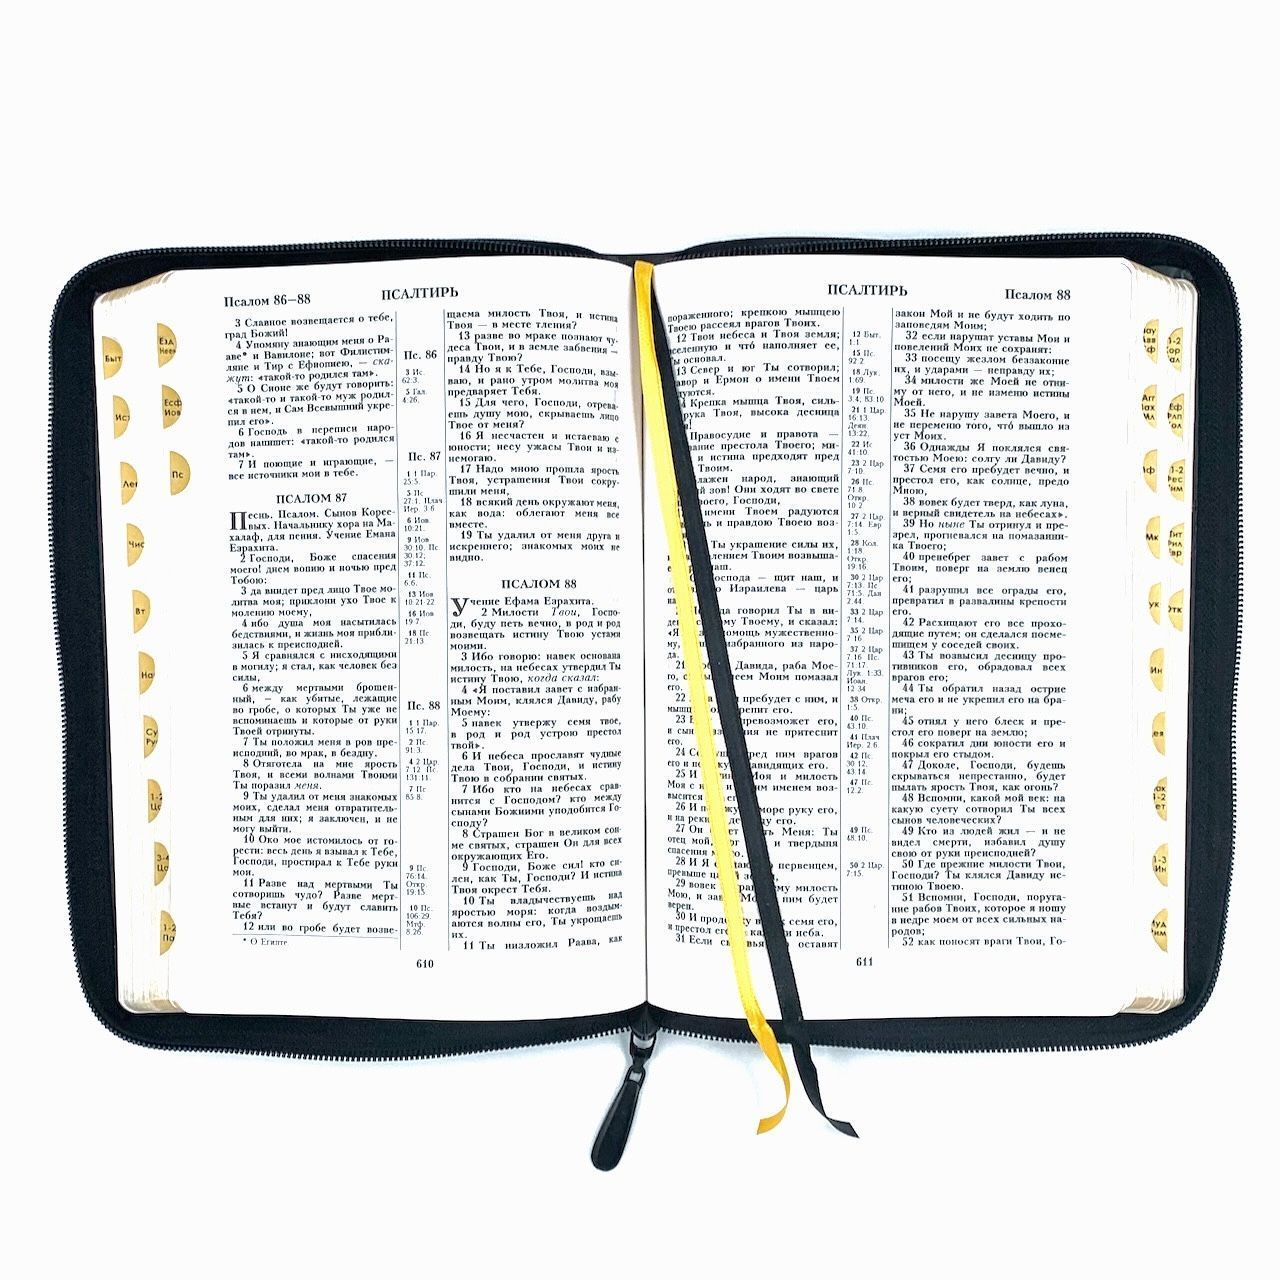 Библия 076zti код  23076-9, дизайн "слово Библия", кожаный переплет на молнии с индексами, цвет черный с прожилками, размер 180x243 мм